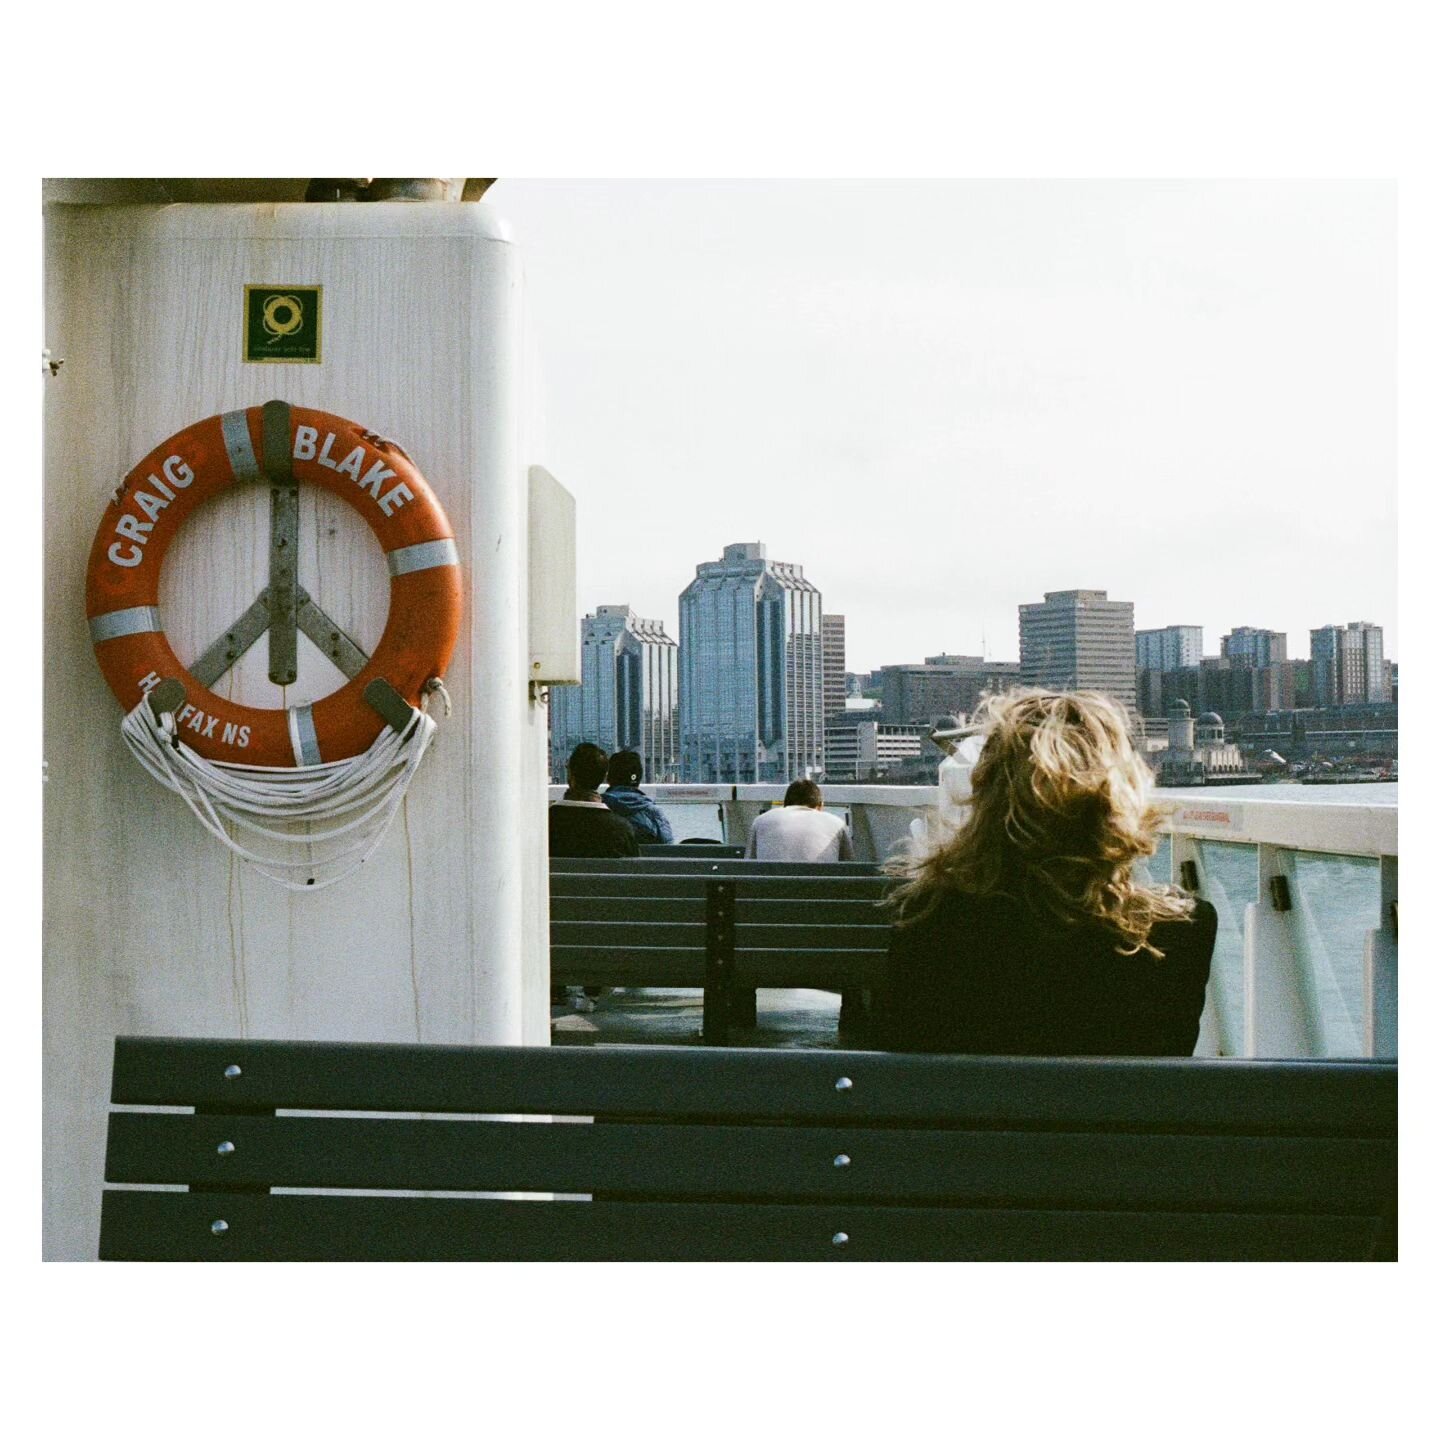 🛳️ Halifax boat life. Shot on #35mm @kodak #kodakportra #film